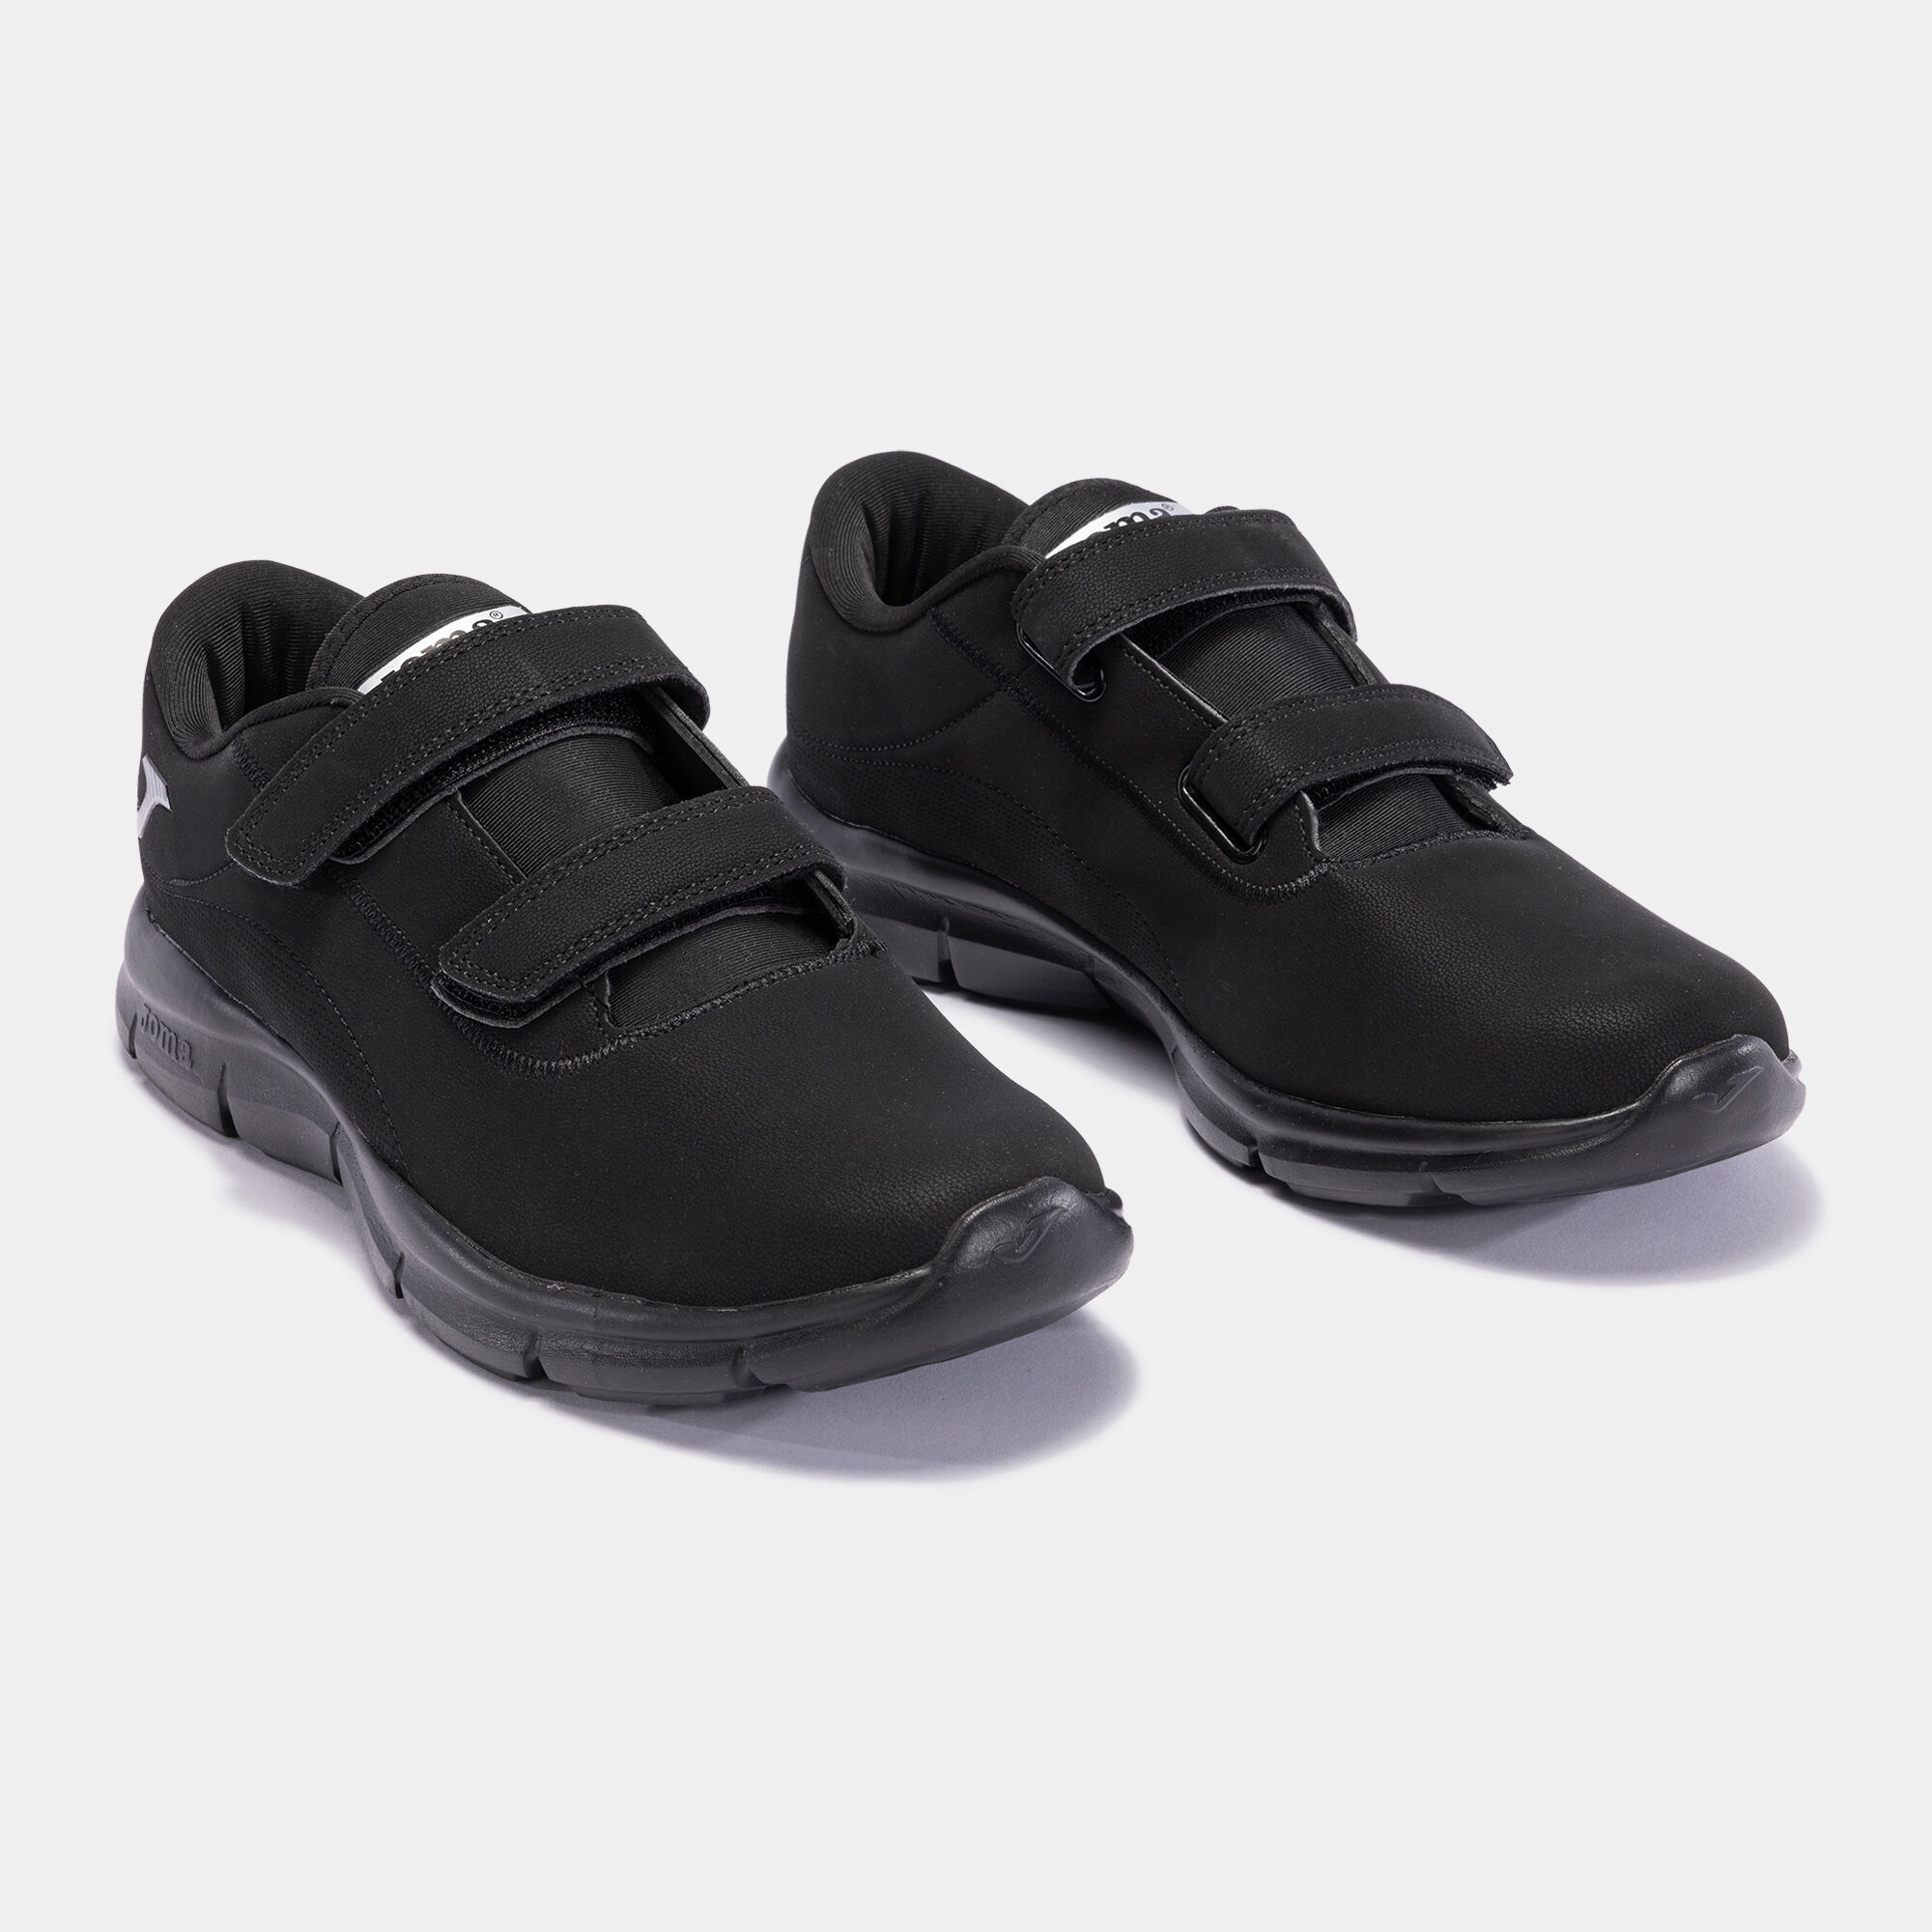 Casual shoes Neftis 22 woman black